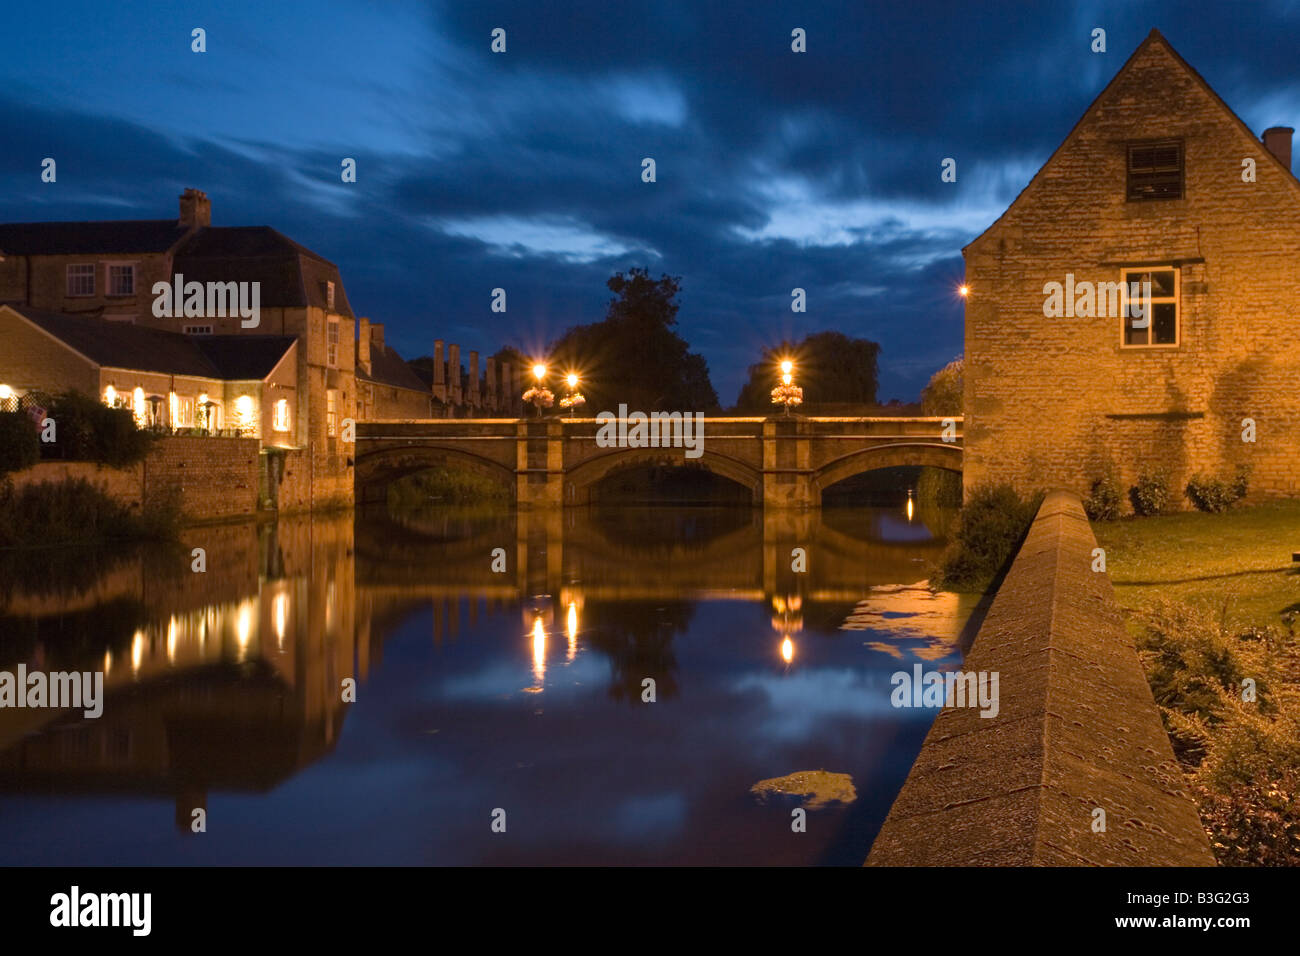 Ville pont sur la rivière Welland Stamford Lincolnshire la nuit Banque D'Images